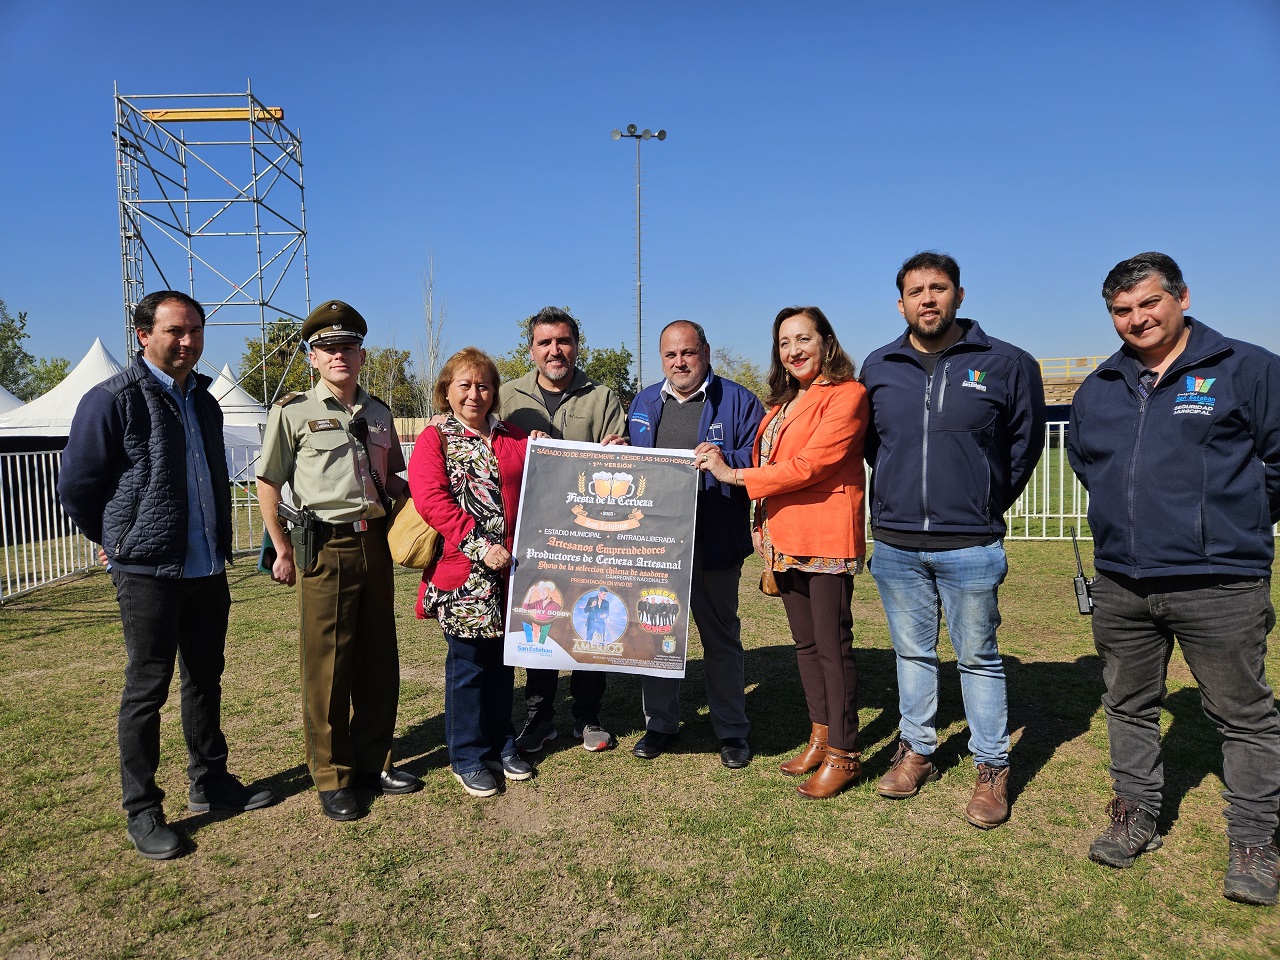 SAN ESTEBAN: Autoridades recorrieron las instalaciones e invitaron a toda la comunidad a la Fiesta de la cerveza de San Esteban